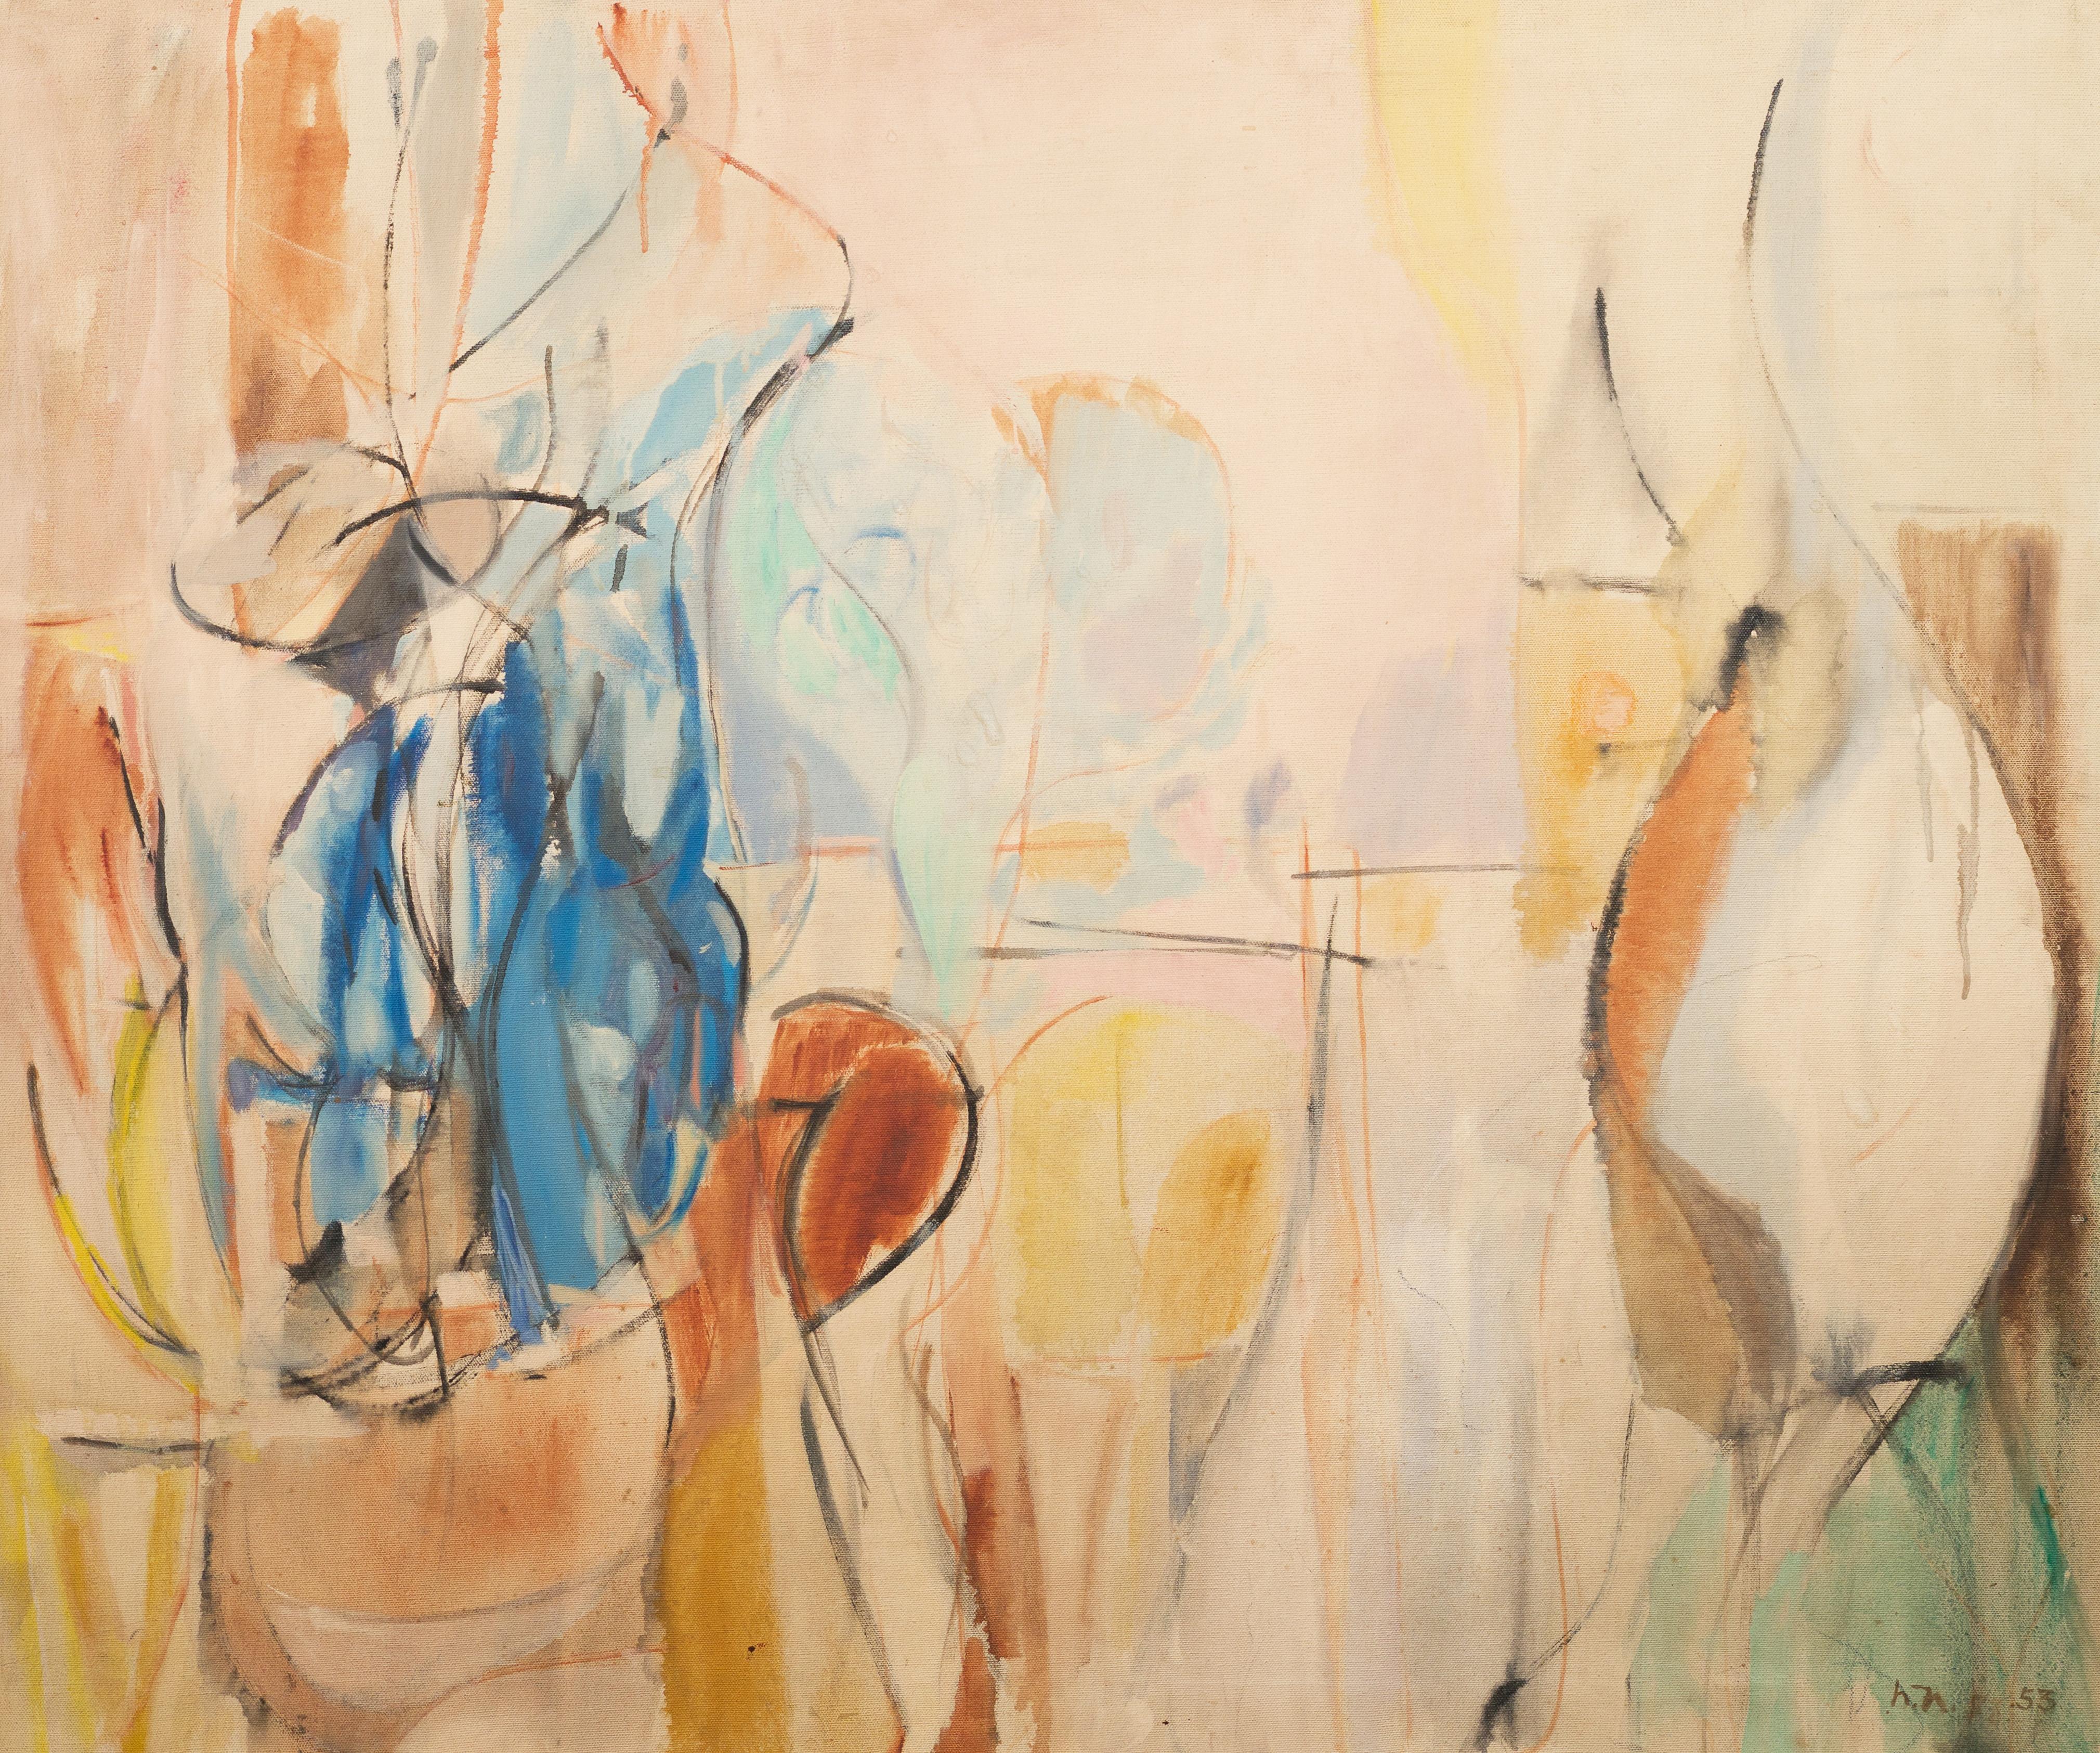 Ancienne peinture à l'huile abstraite moderniste américaine de Harriet Nash.  Huile sur toile.  Encadré.  Signé en monogramme et daté 1953.

Biographie de l'artiste

Harriet Holden Nash (1933 - )

Harriet est née et a grandi à Brooklyn, New York, et